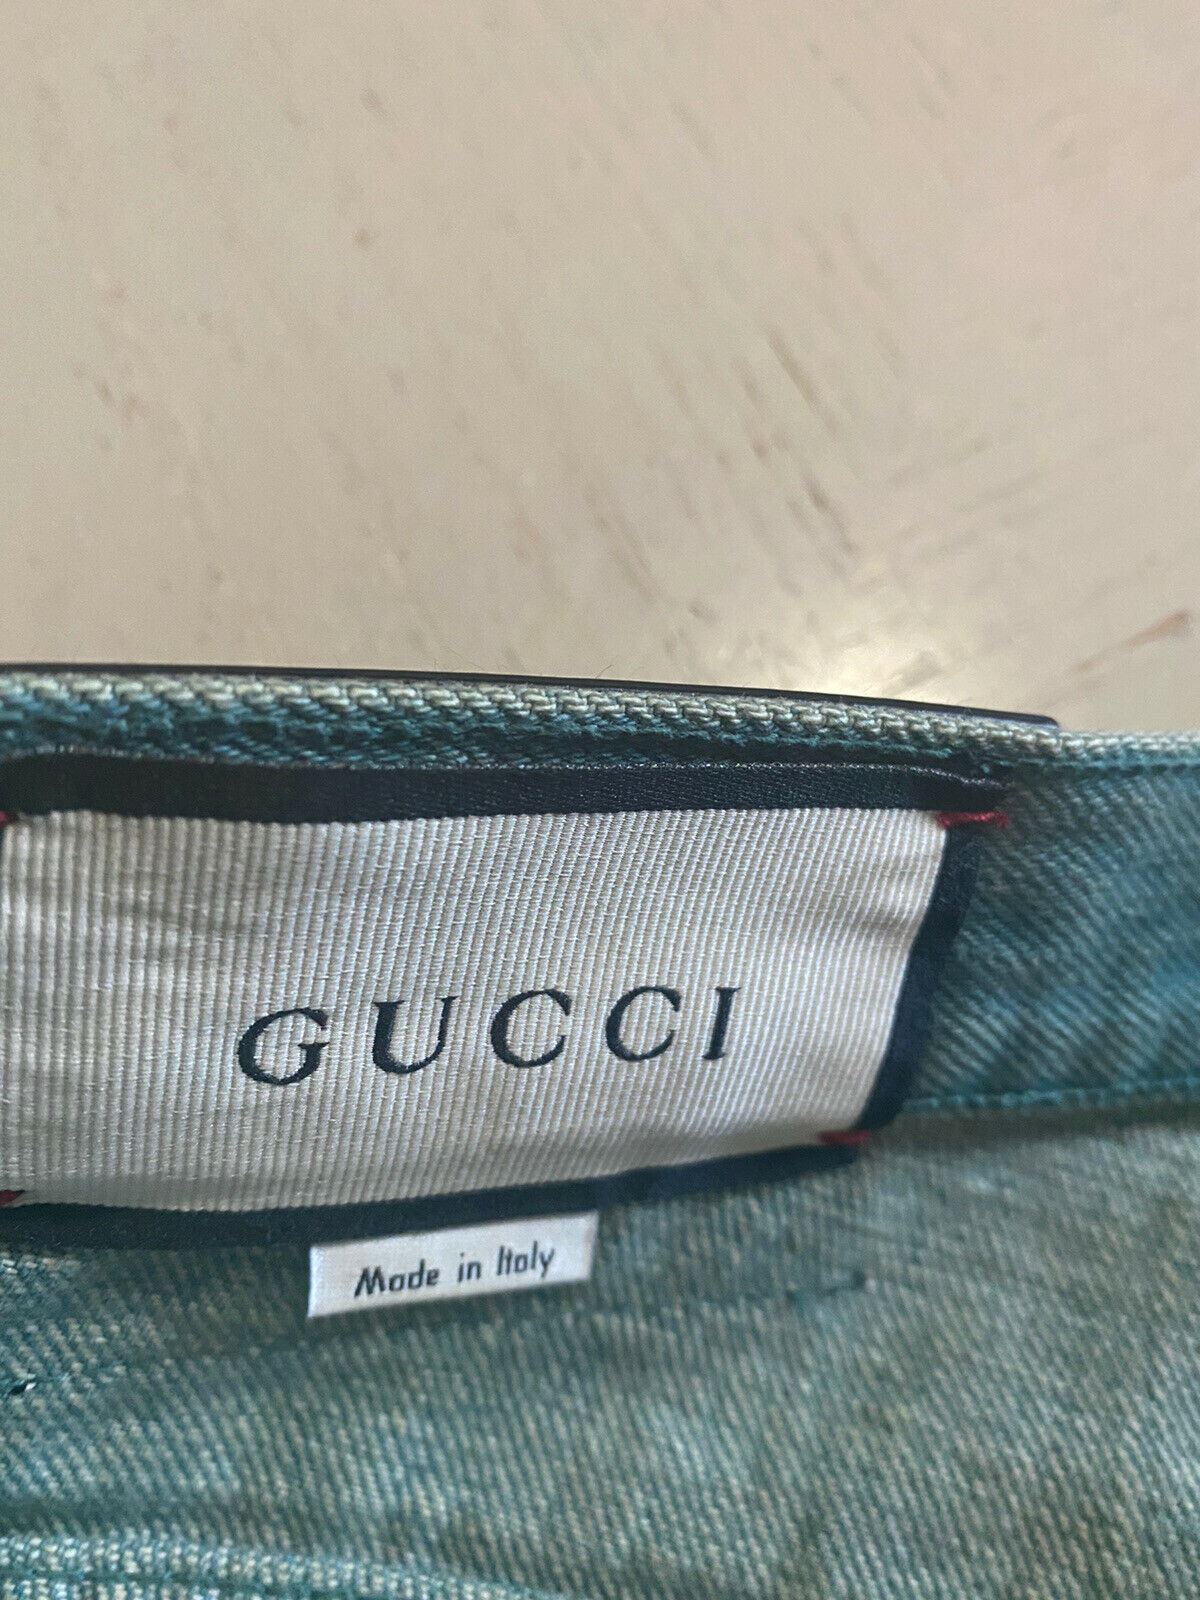 Neu mit Etikett: 1450 $ Gucci Herren-Jeanshose, Grün, Größe 30 US